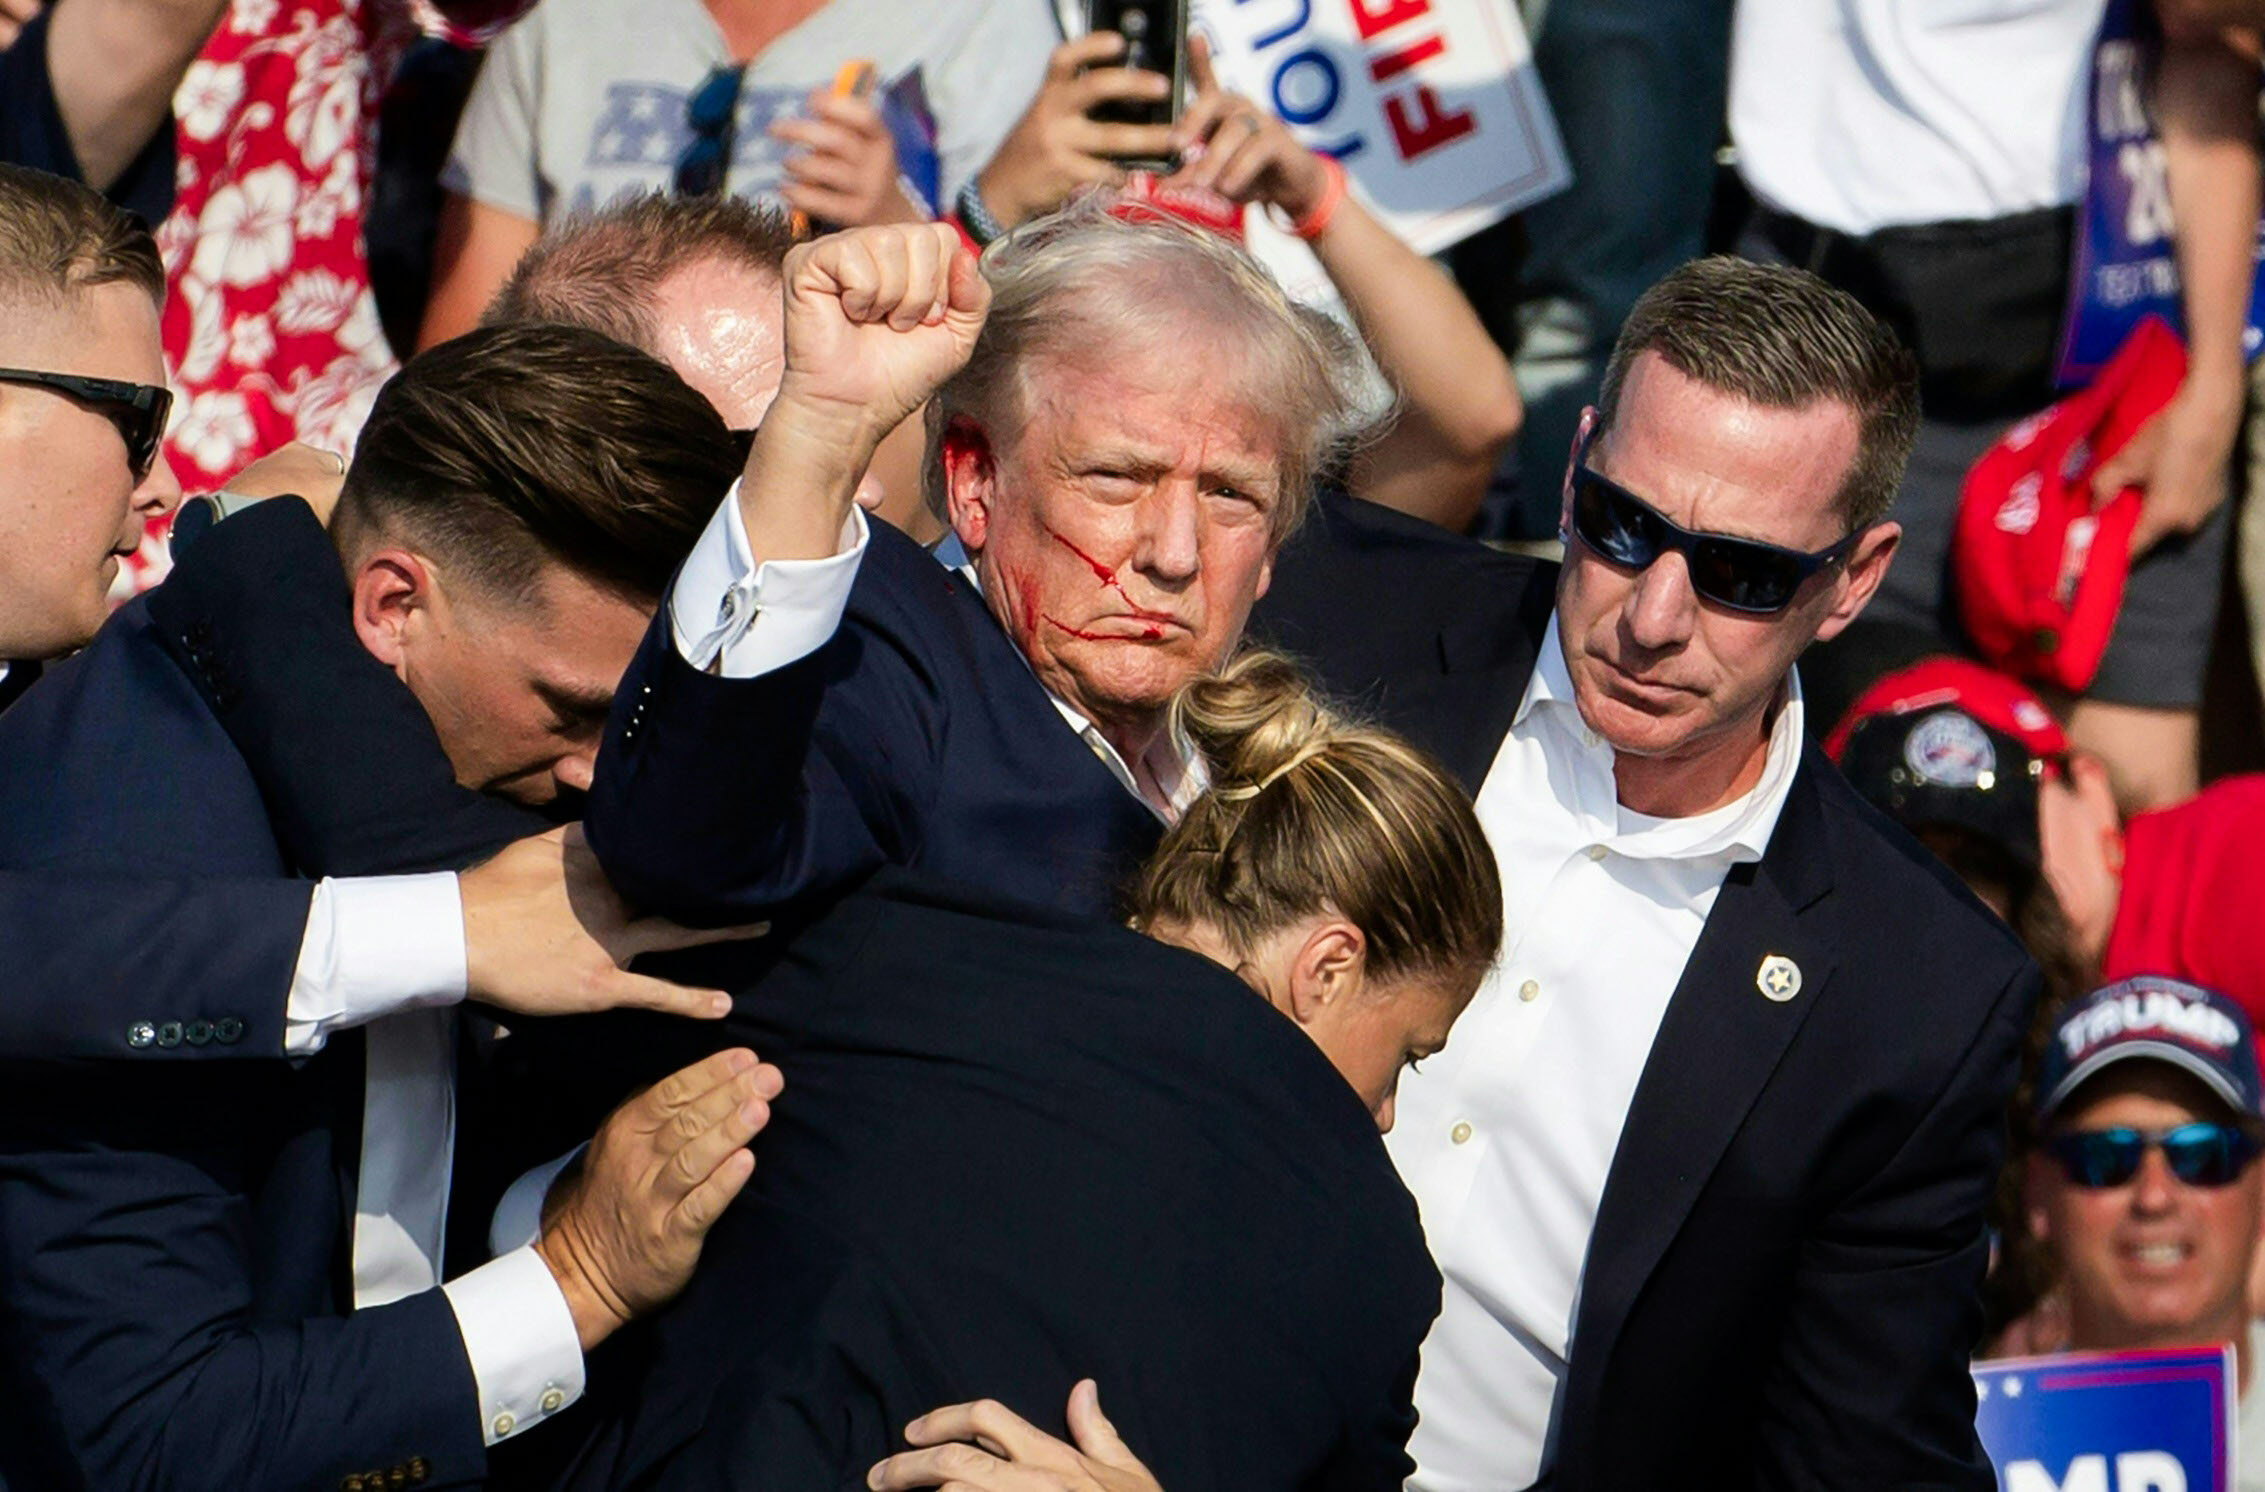 Các nhân viên Sở Mật vụ Hoa Kỳ vây quanh cựu Tổng thống Donald Trump khi hộ tống ông rời khỏi sân khấu. (Ảnh: Rebecca Droke/AFP qua Getty Images)